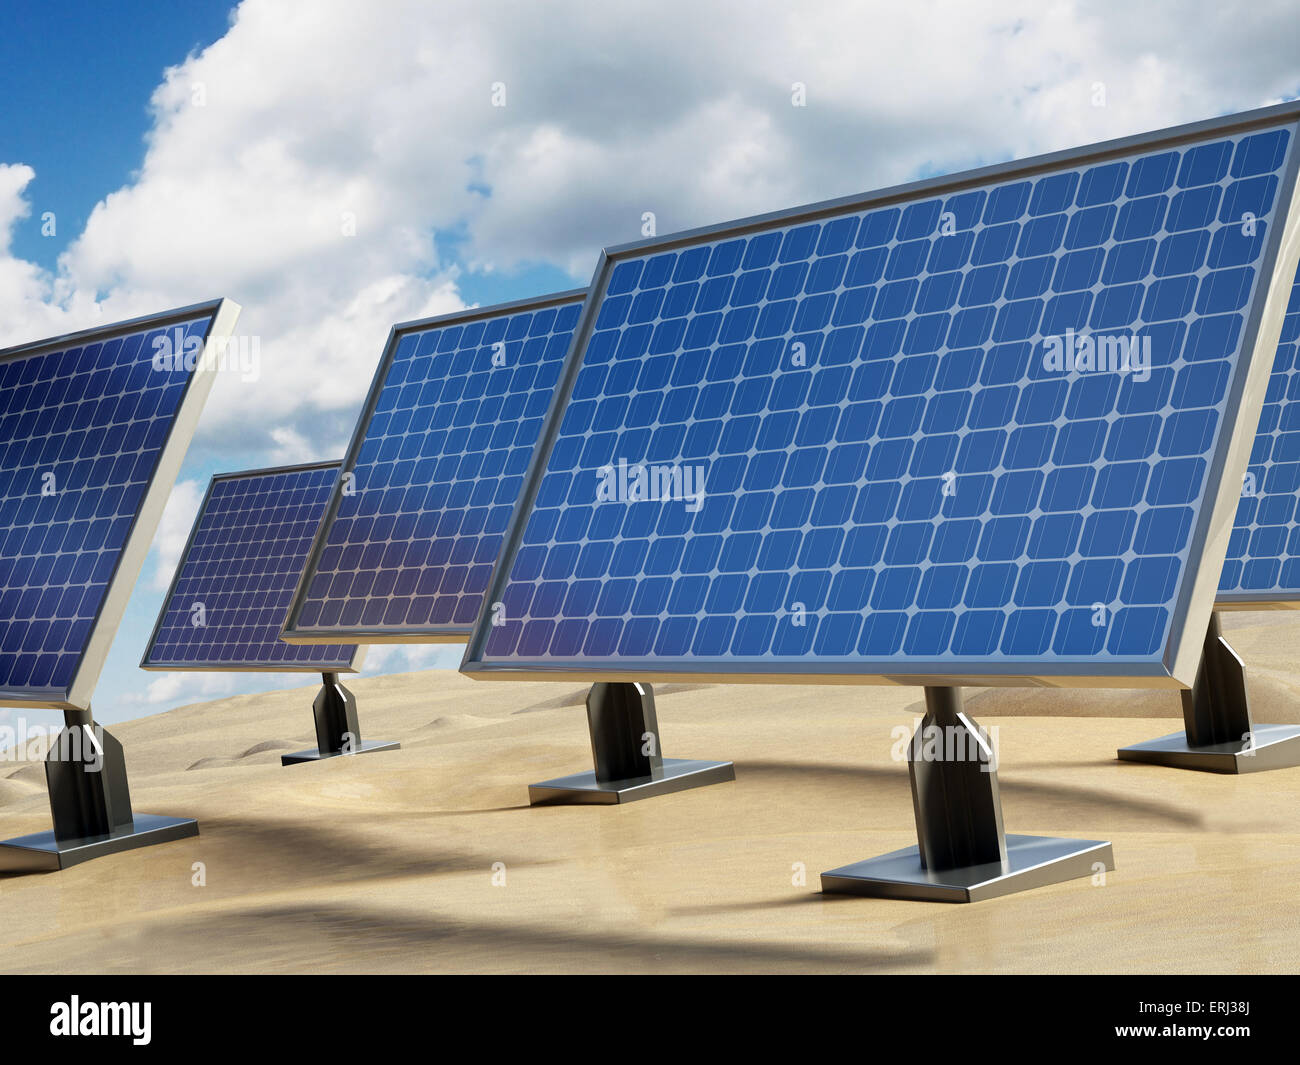 Solar panel on the desert sands. Stock Photo